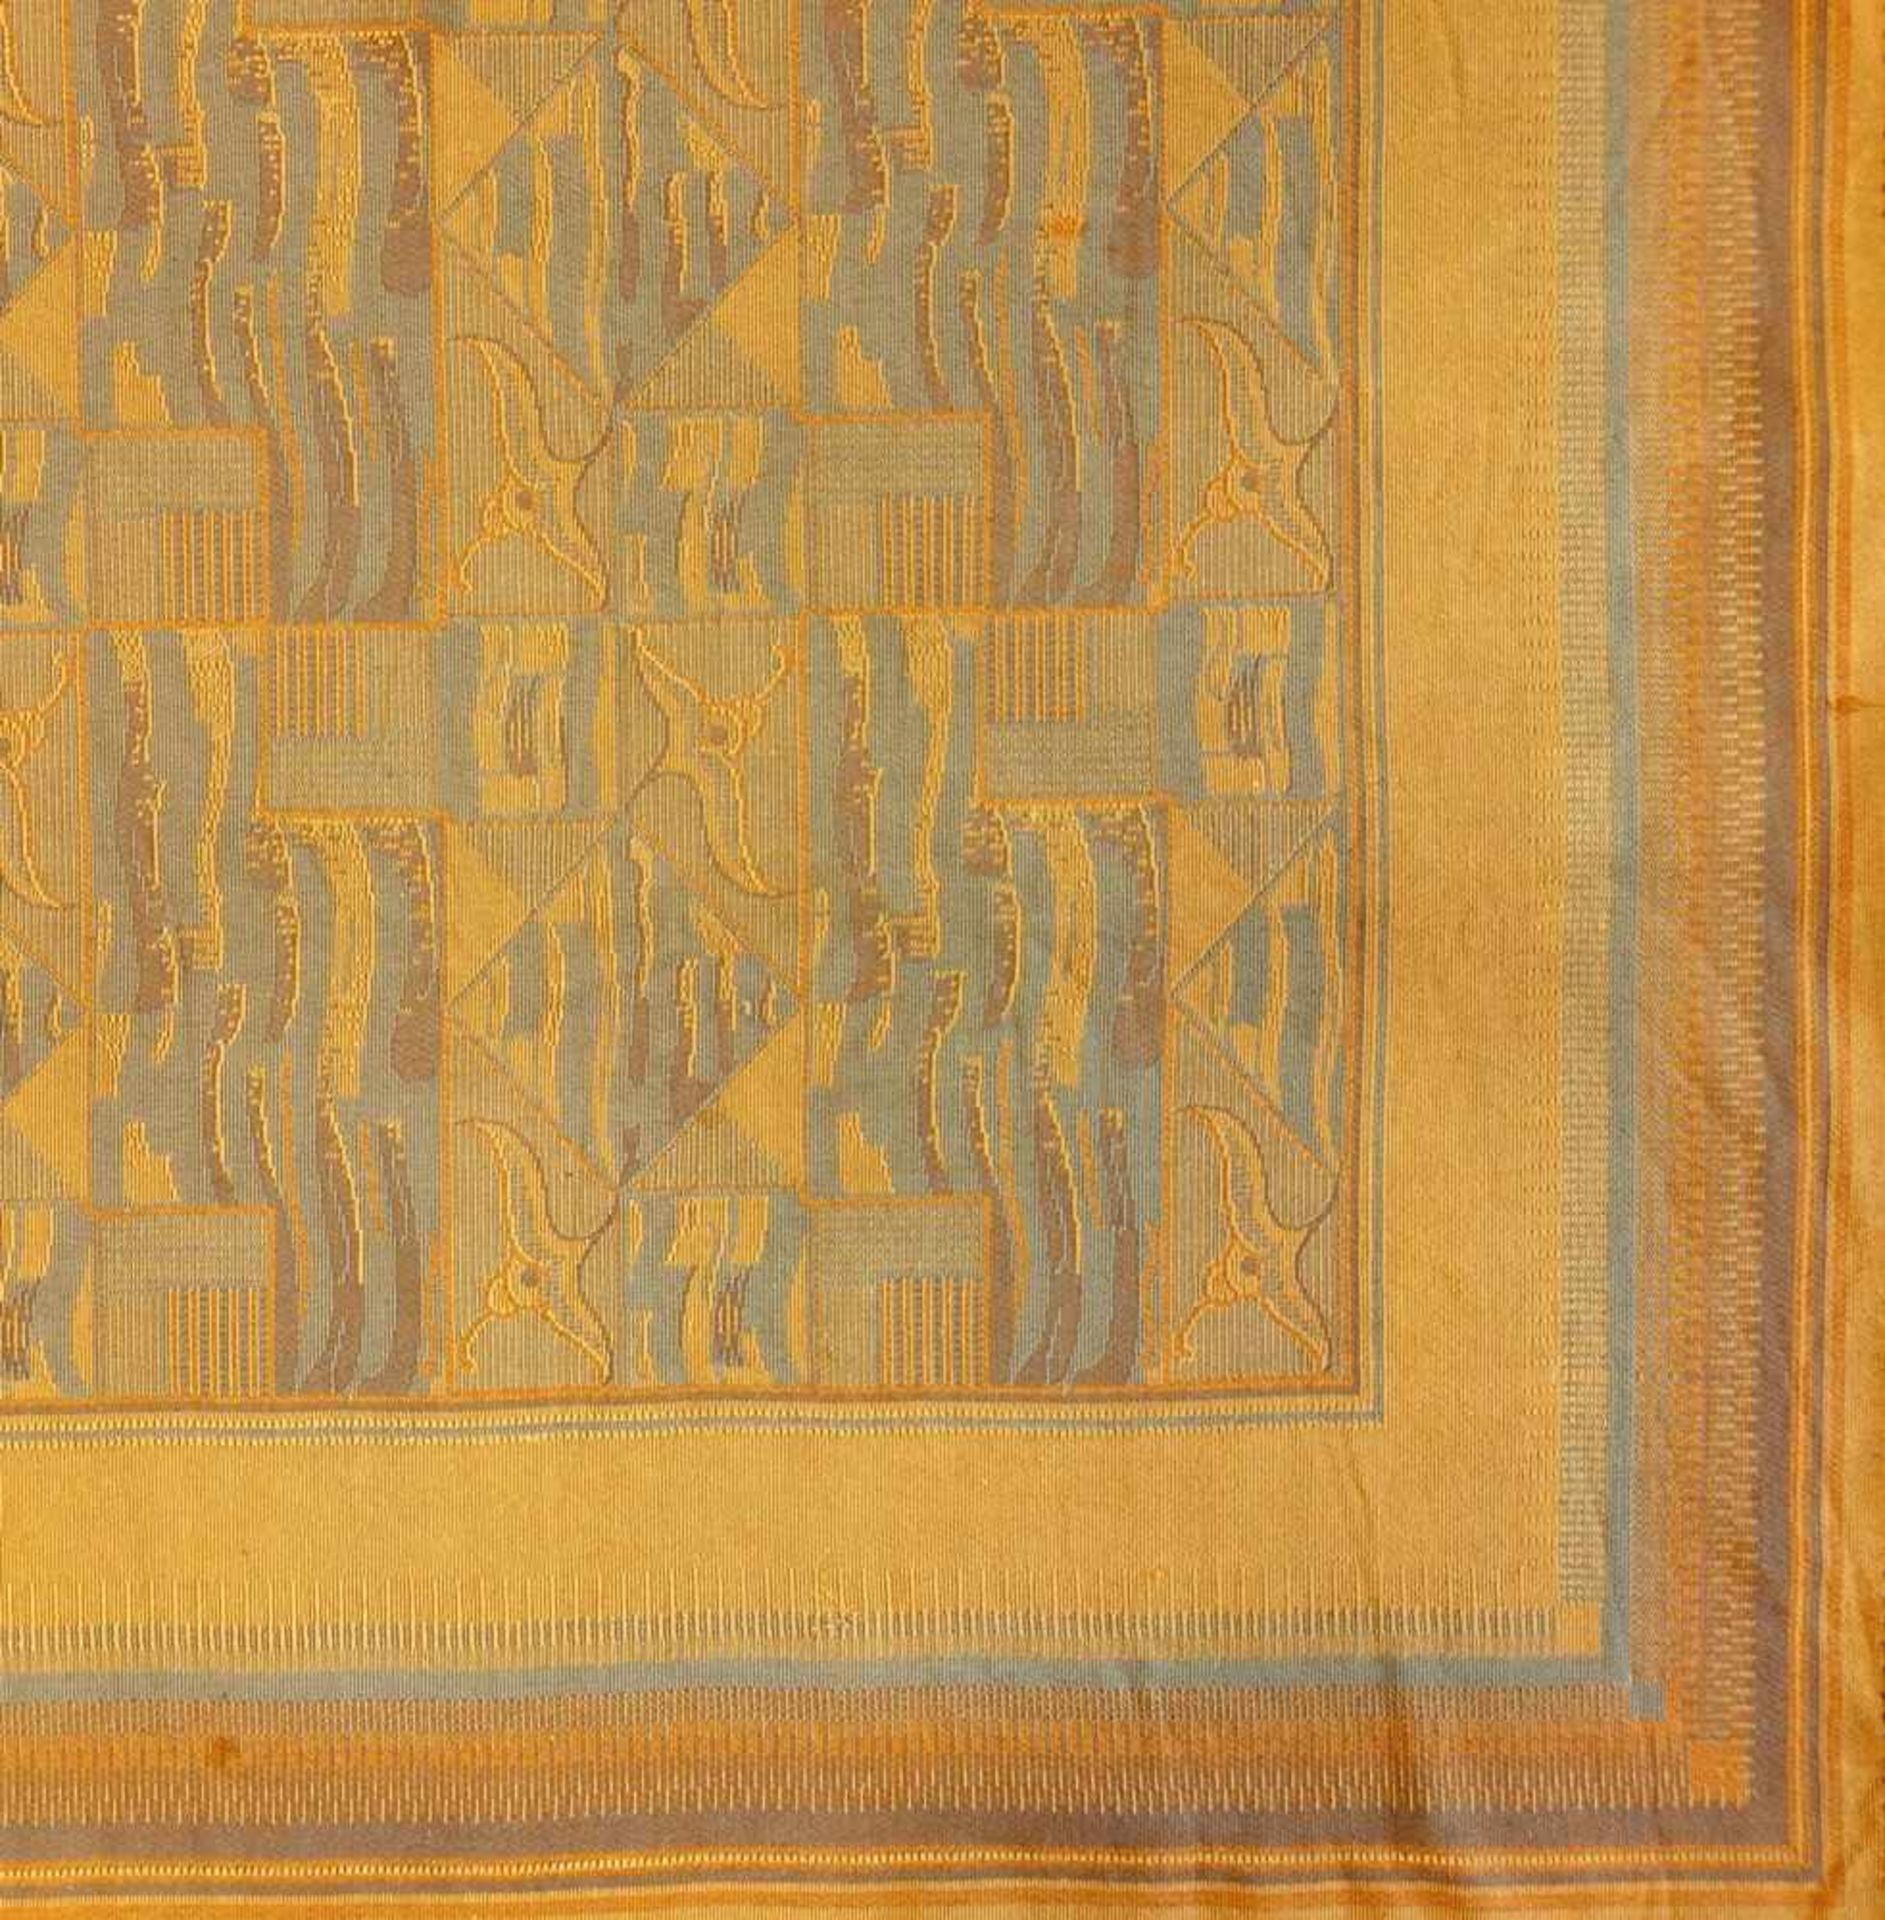 Tischdecke, Art deco, 1920/30er Jahre, eingewebtes orange-blaues, geometrisches Muster, zweiseitig - Bild 2 aus 2